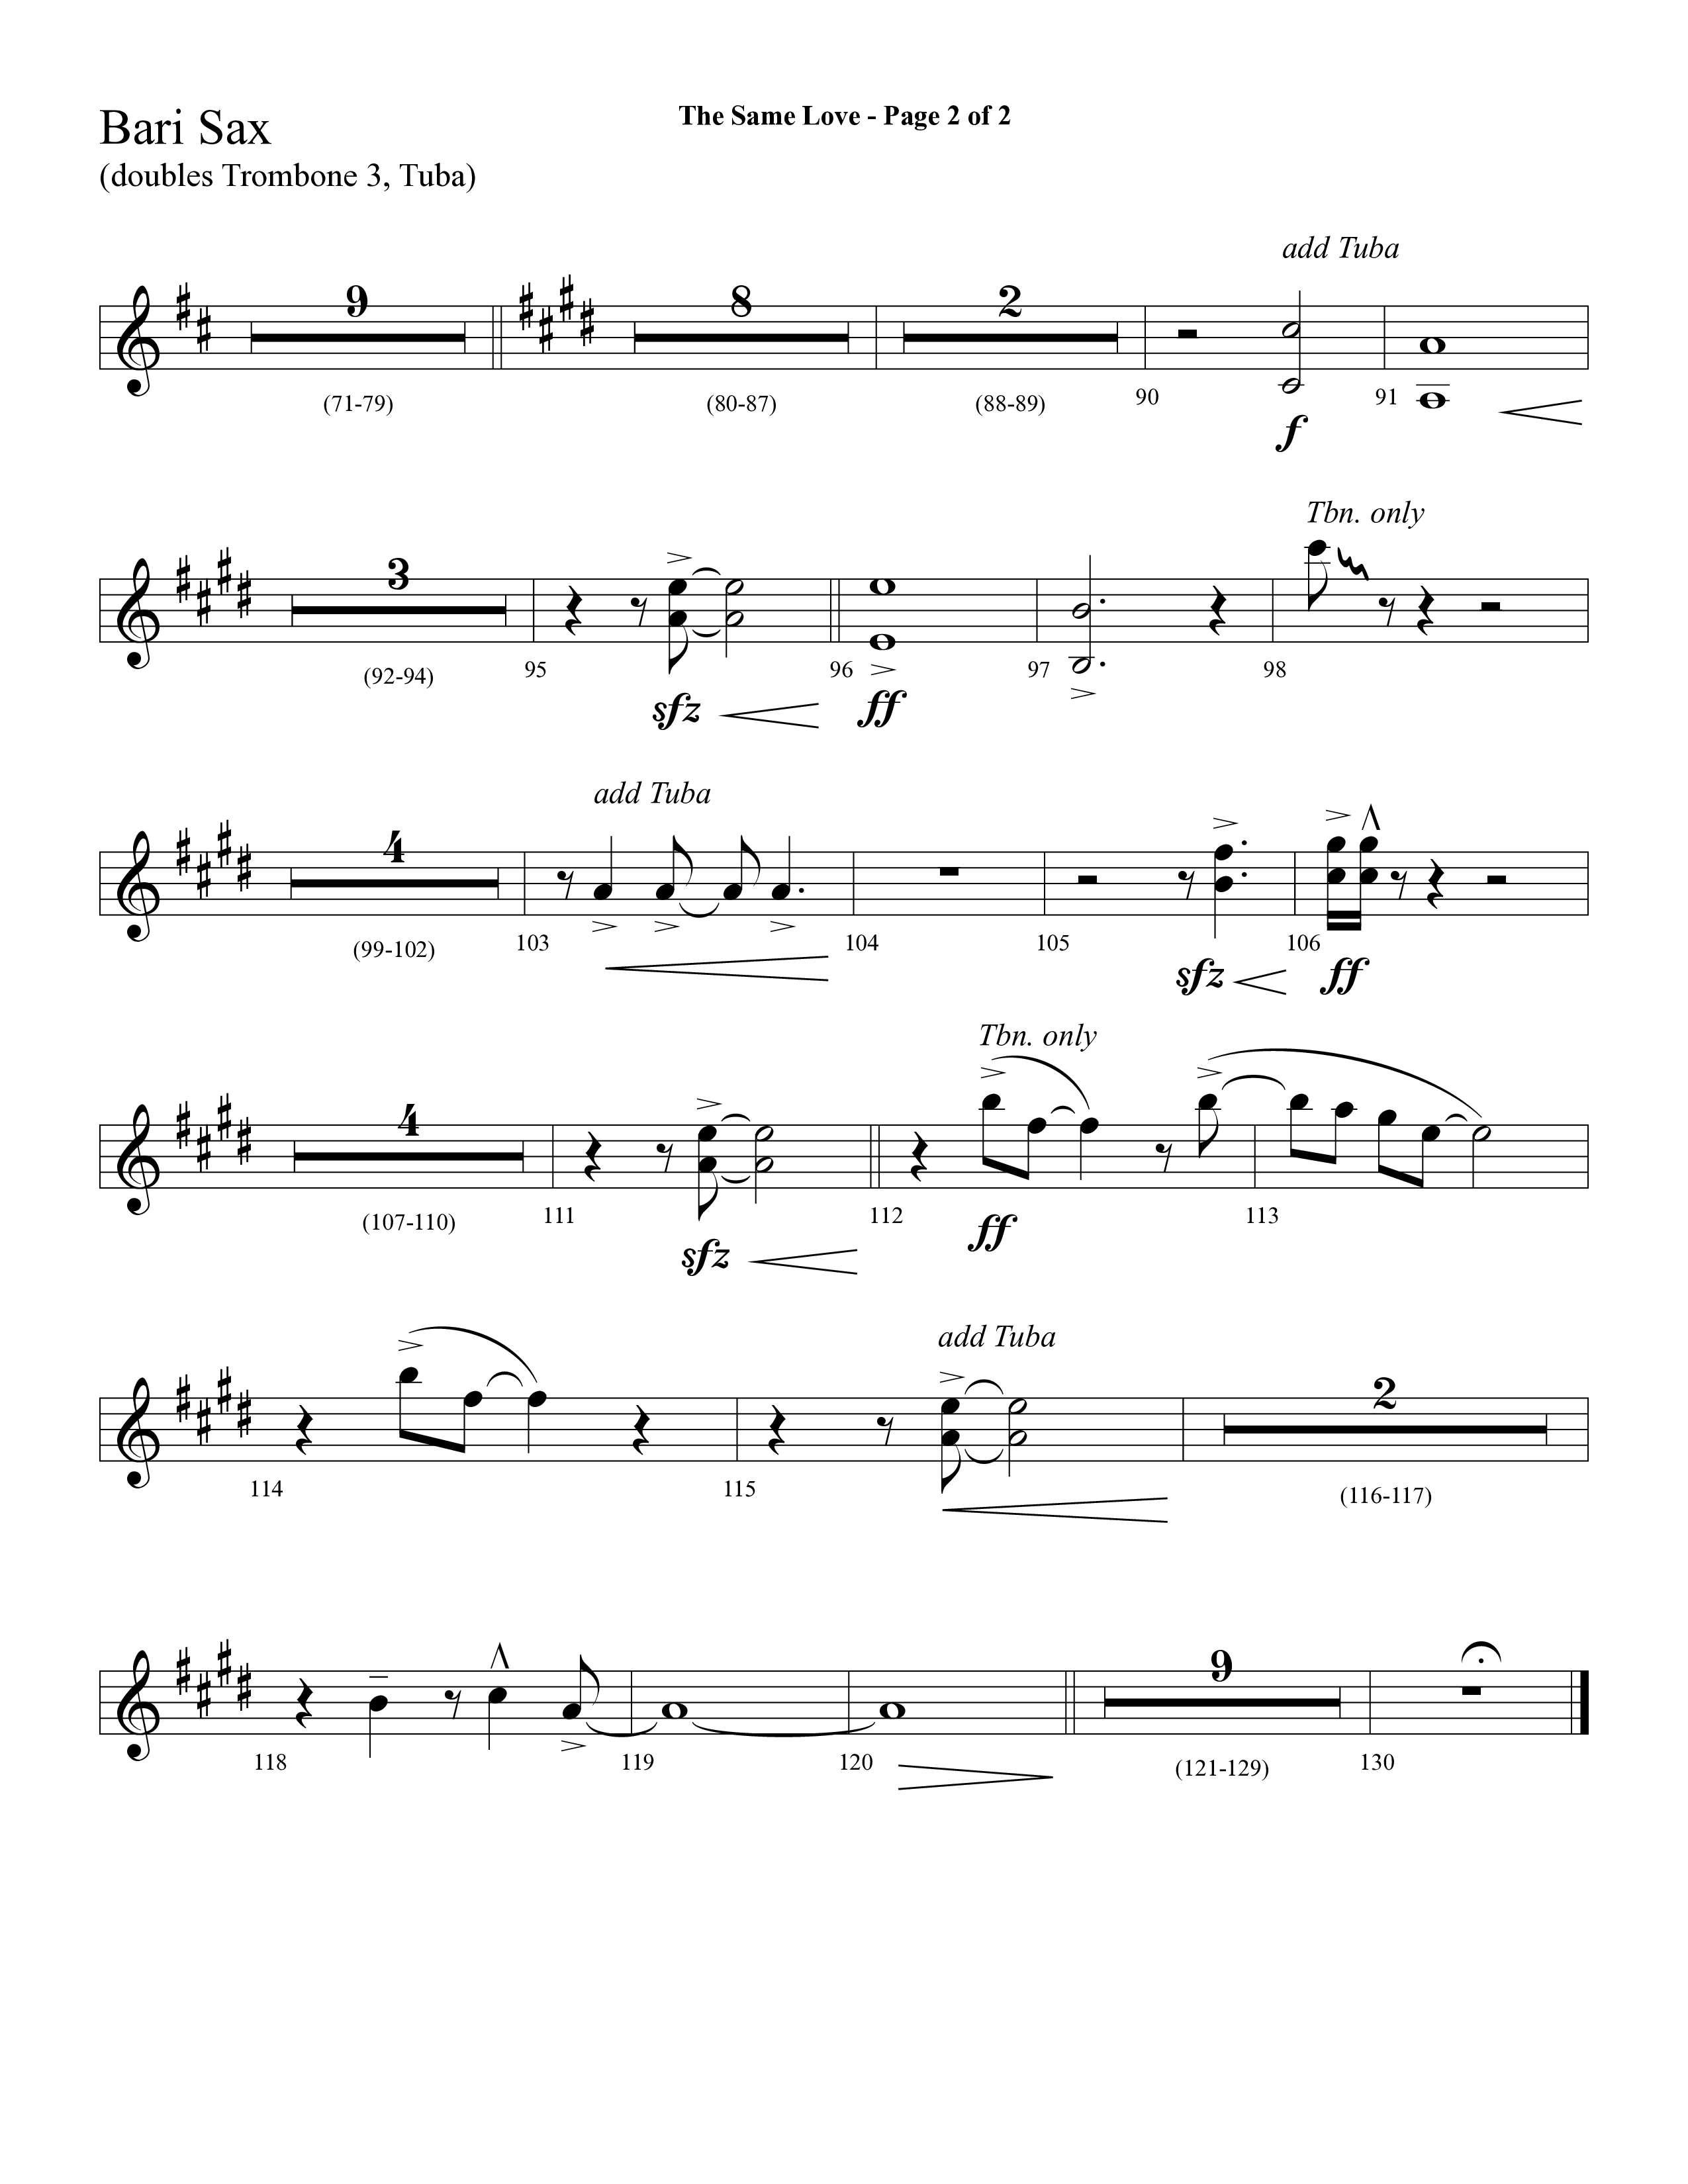 The Same Love (Choral Anthem SATB) Bari Sax (Lifeway Choral / Arr. Cliff Duren)